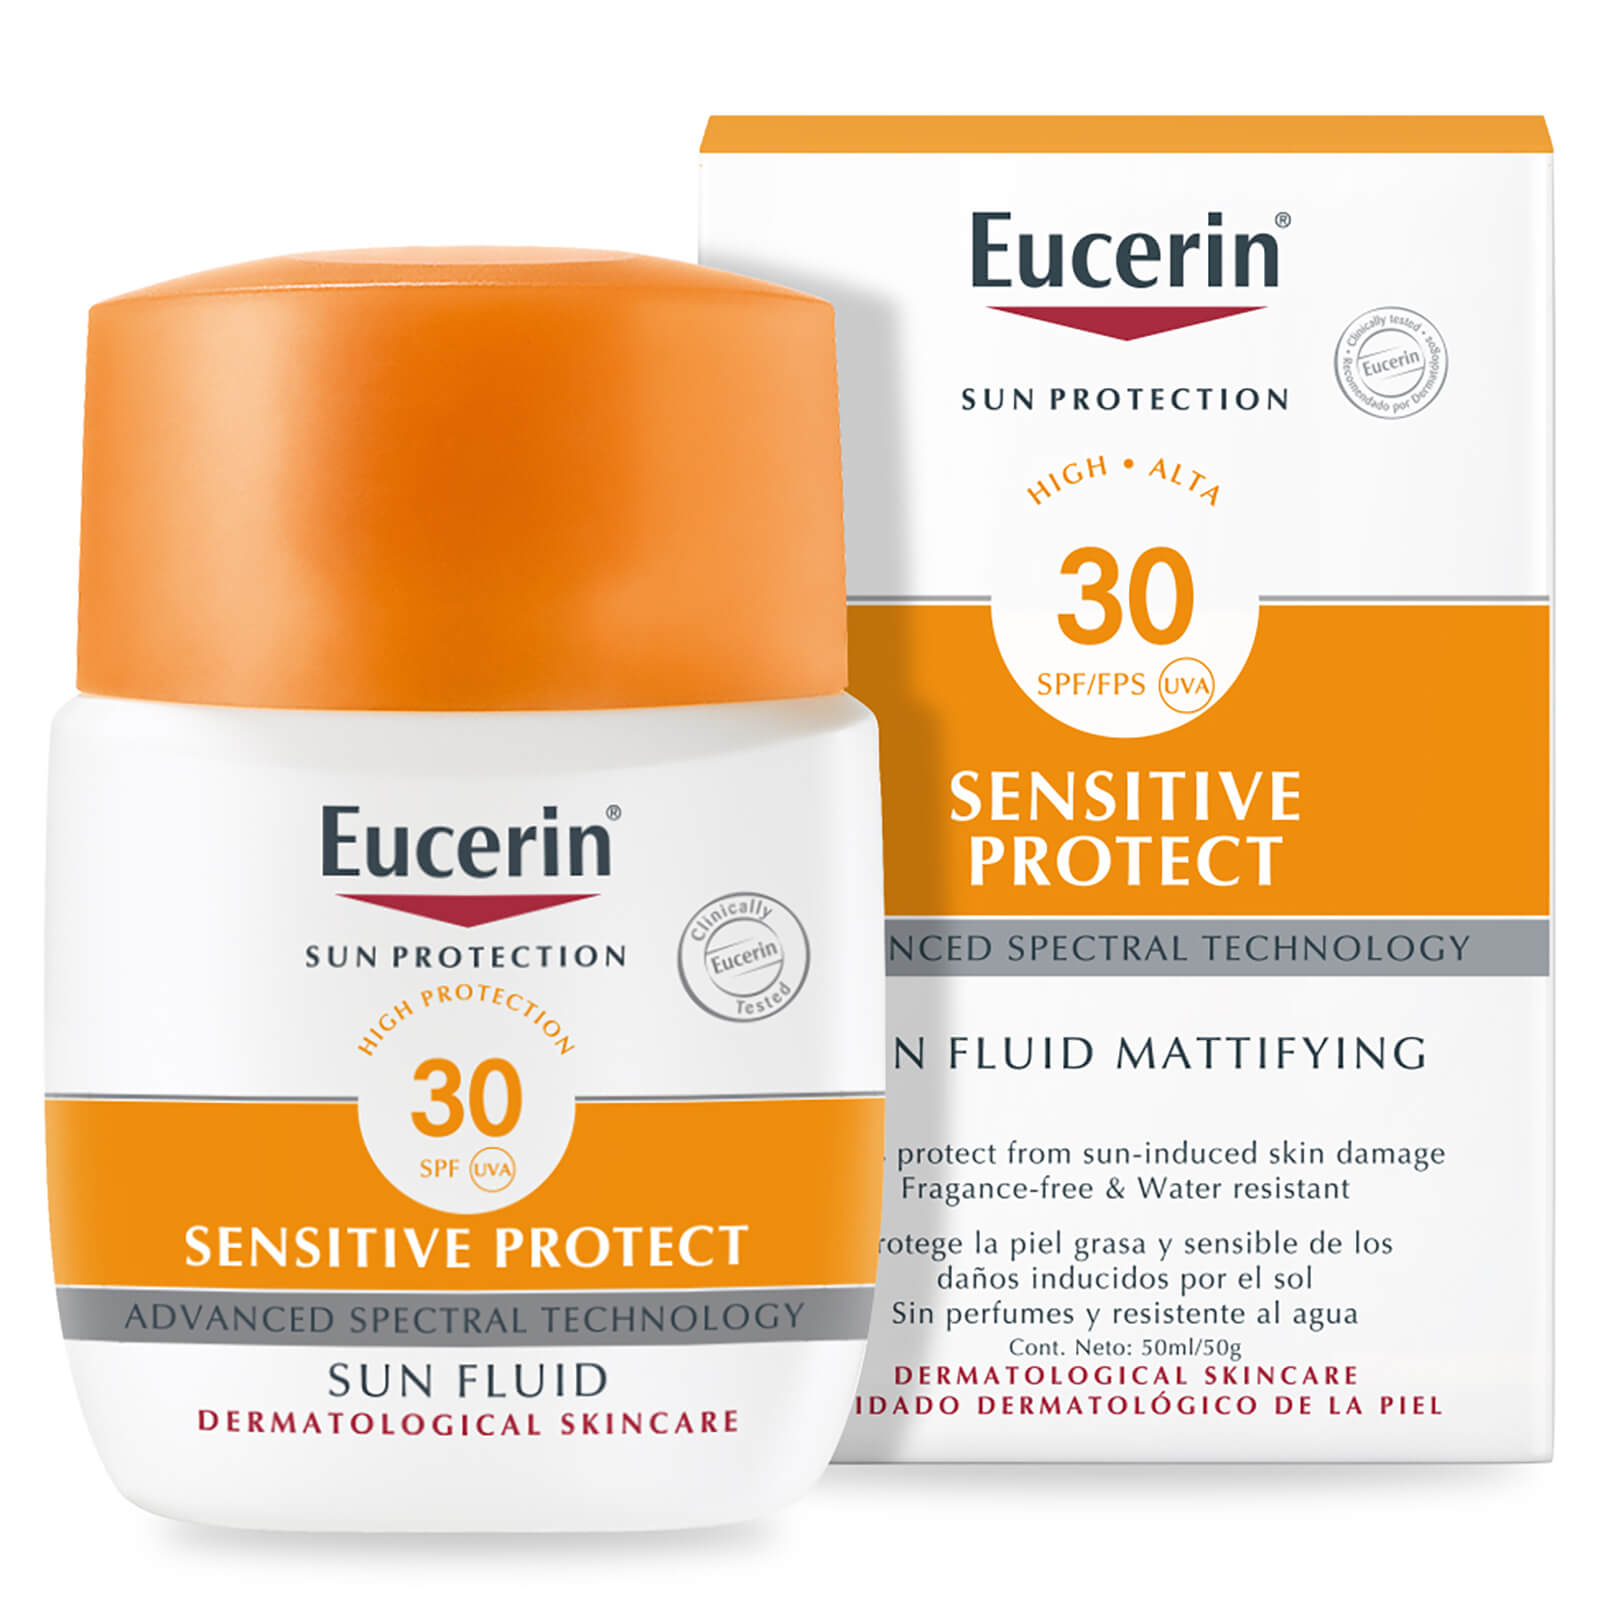 Eucerin® Sun Protection Sun Fluid Mattifying Face SPF30 High (50ml)